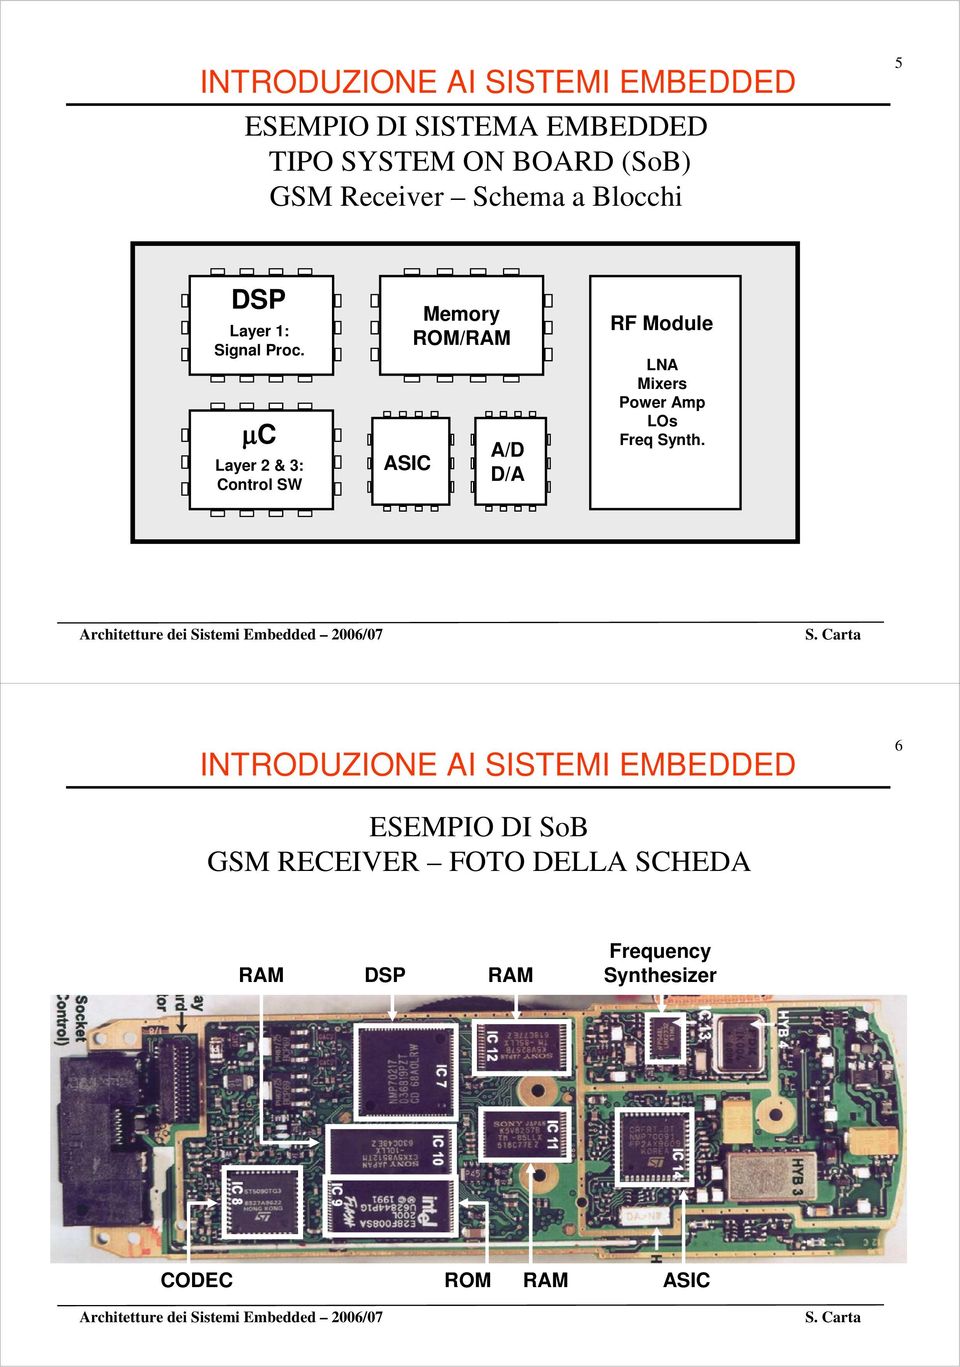 μc Layer 2 & 3: Control SW ASIC Memory ROM/ A/D D/A RF Module LNA Mixers